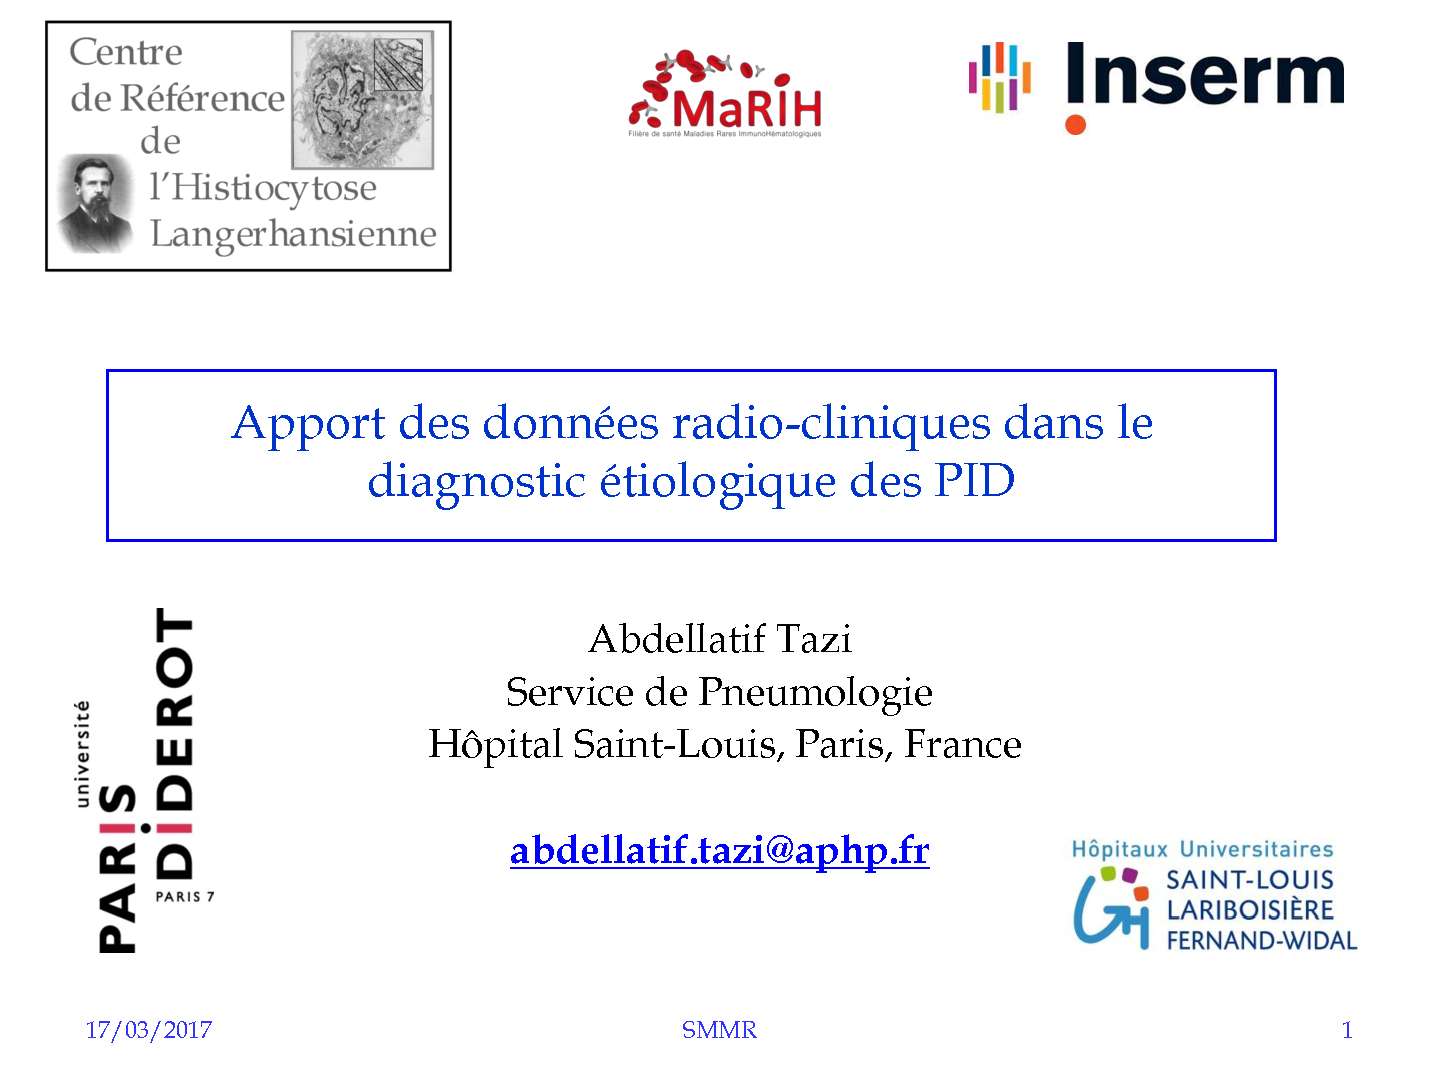 Apport des données radio cliniques dans le diagnostic étiologique des PID. A. TAZI (Paris)